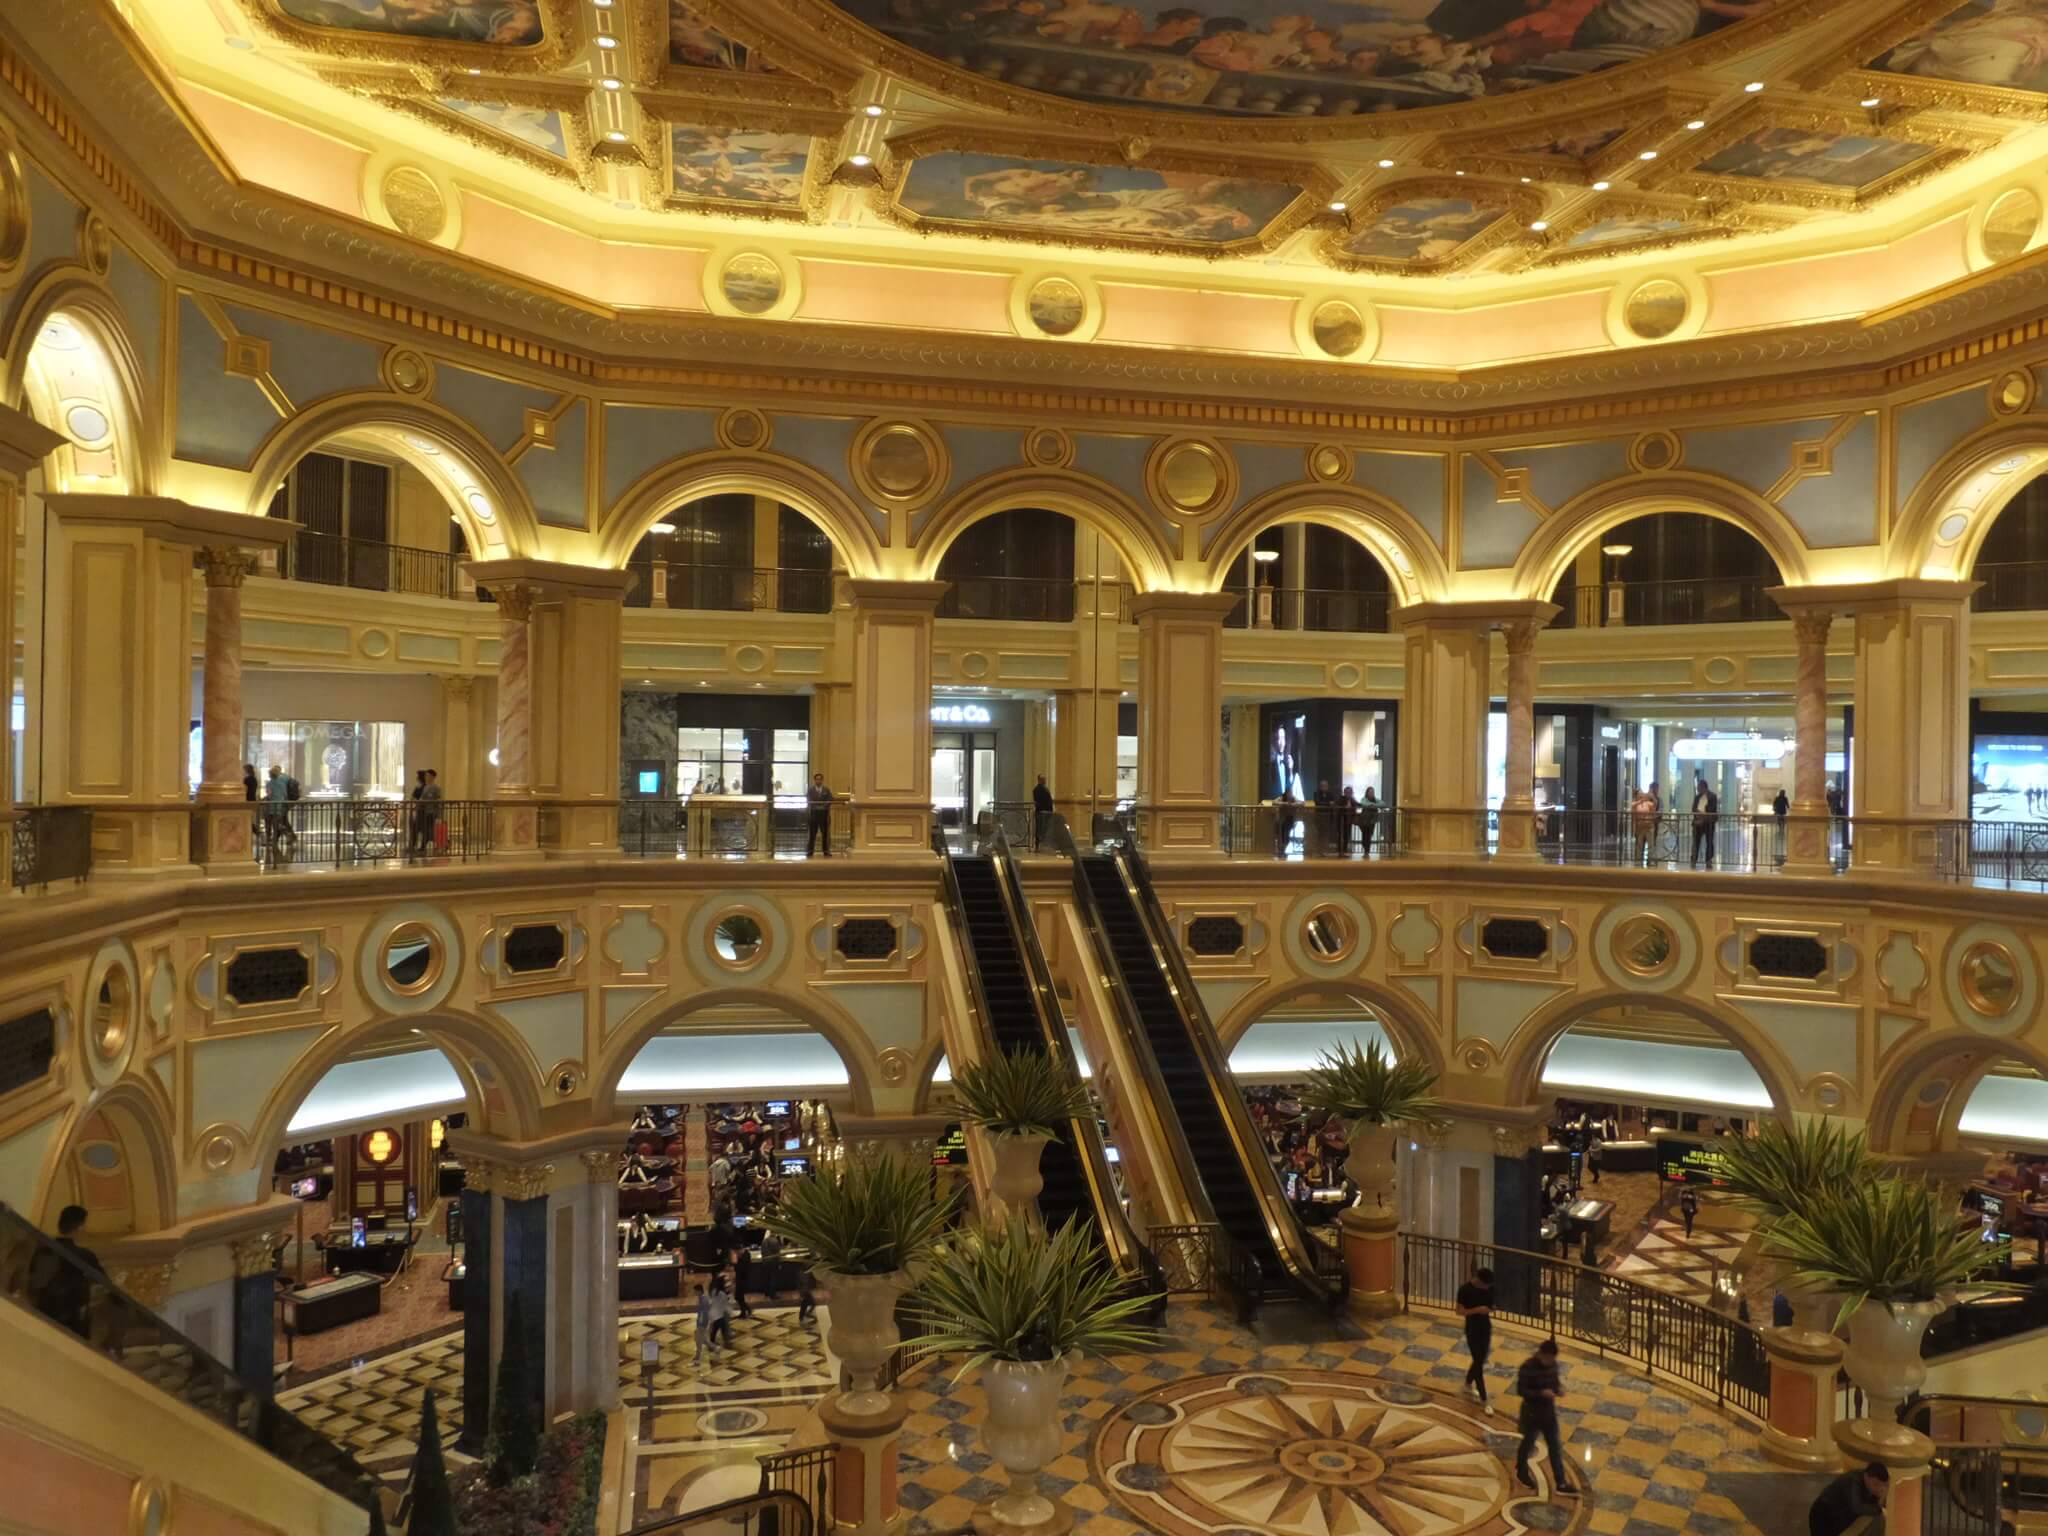 The Venetian Hotel and Casino in Las Vegas, geraakt door een digitale aanval in 2014. © Flickr / Friscocali